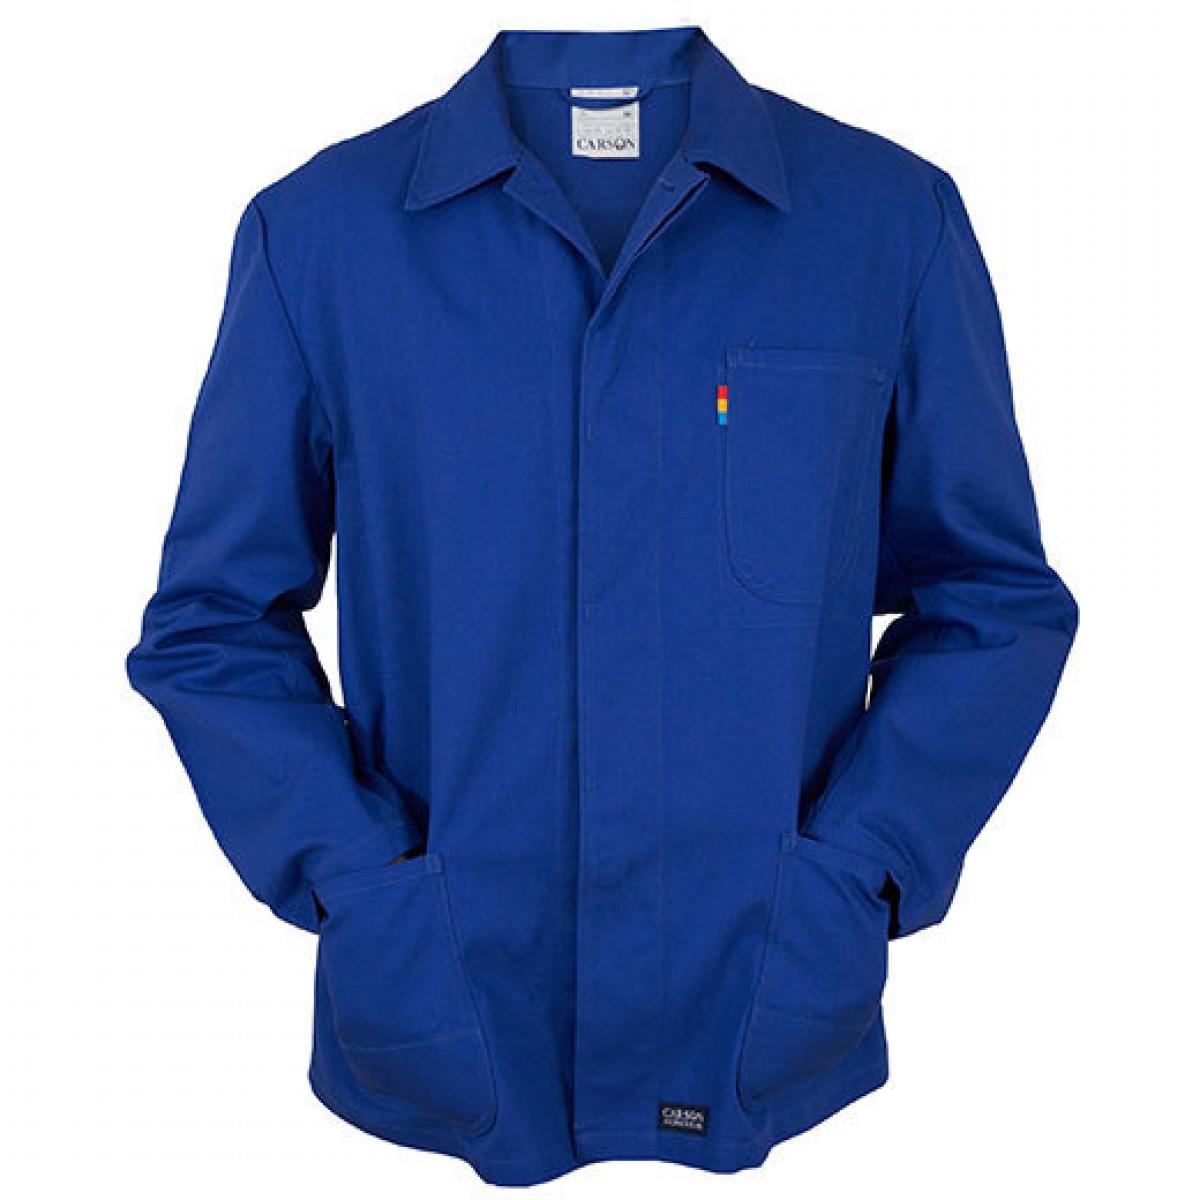 Hersteller: Carson Classic Workwear Herstellernummer: KTH709J Artikelbezeichnung: Herren Classic Long Work Jacket bis 60 Grad waschbar Farbe: Royal